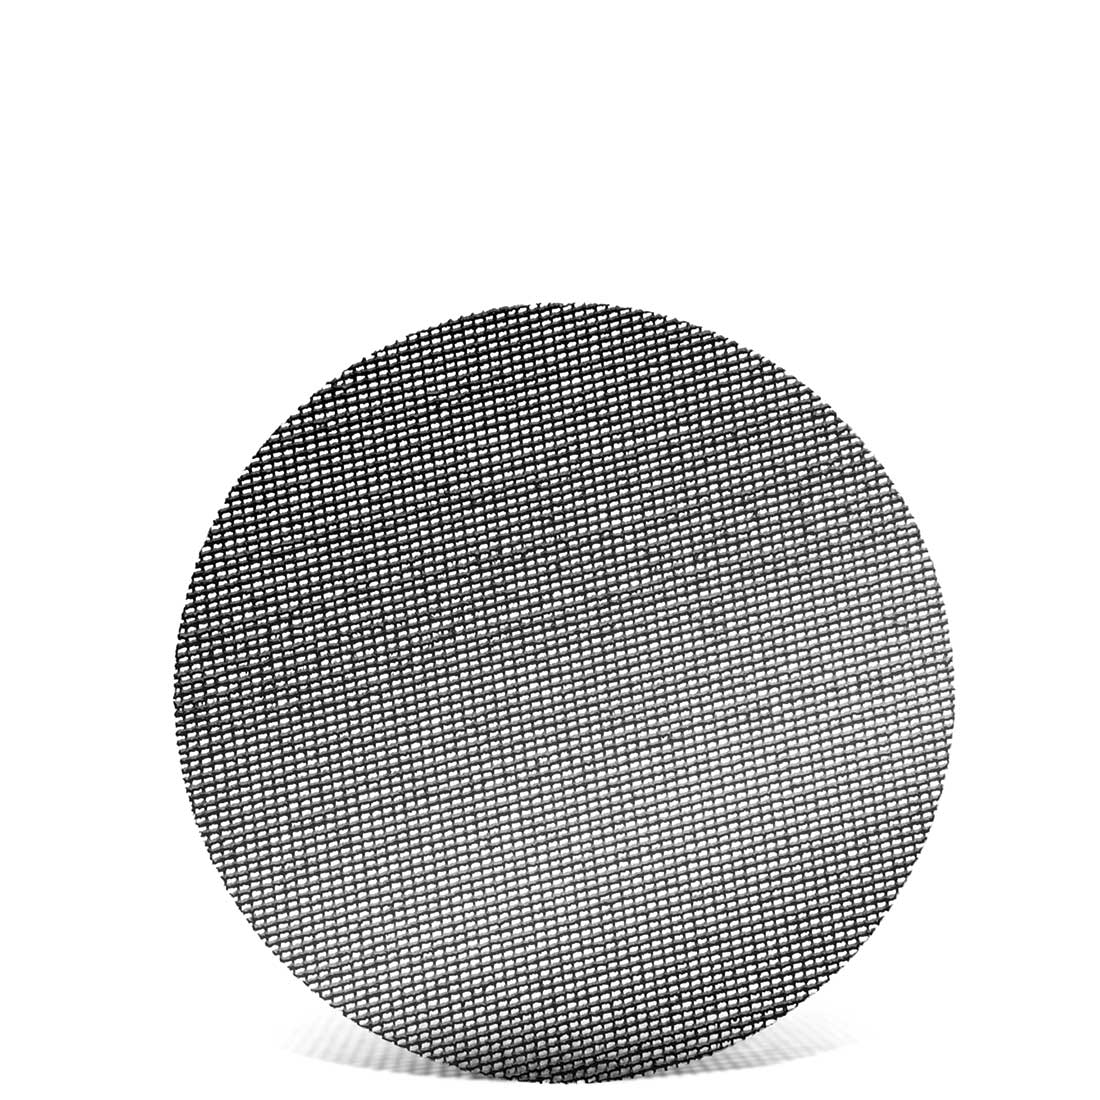 MENZER Klett-Schleifgitter für Exzenterschleifer, K60–180, Ø 90 mm / Gitter / Siliciumcarbid